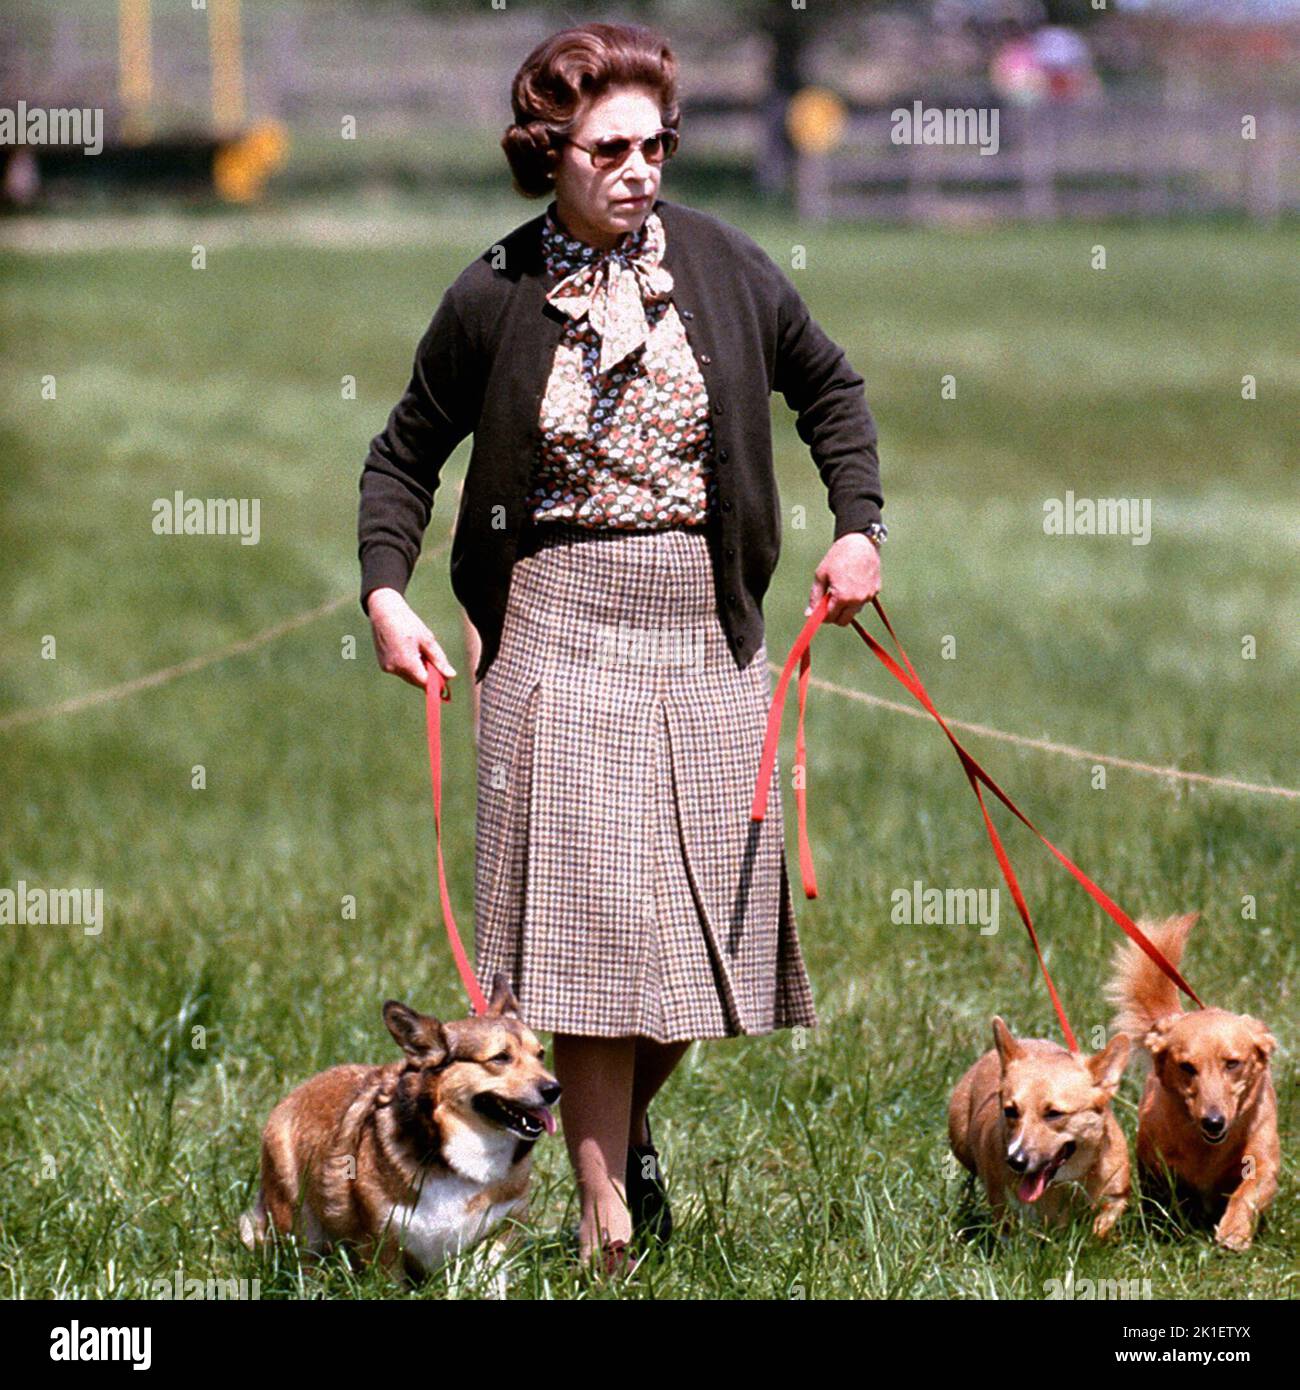 Foto de archivo de fecha 17/05/80 de la Reina Isabel II con algunos de sus Corgis caminando por el campo de Cross Country durante el segundo día de los ensayos de Windsor Horse. Fecha de emisión: Domingo 18 de Septiembre de 2022.. El crédito de la foto debe decir: PA Wire Foto de stock